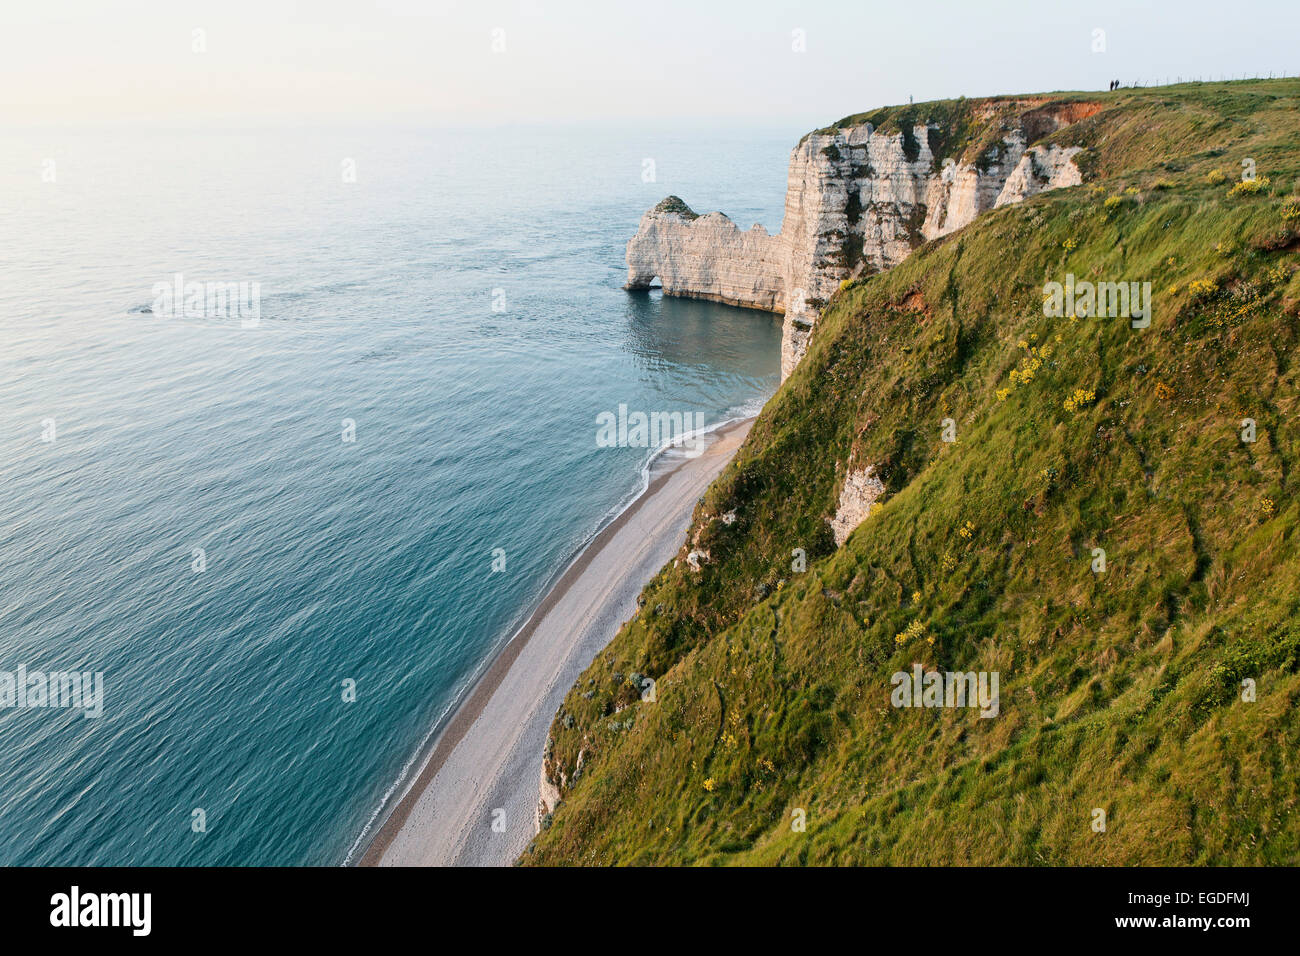 White cliffs, Porte d'Amant, Etretat, Seine-Maritime, Upper-Normandy, France Stock Photo